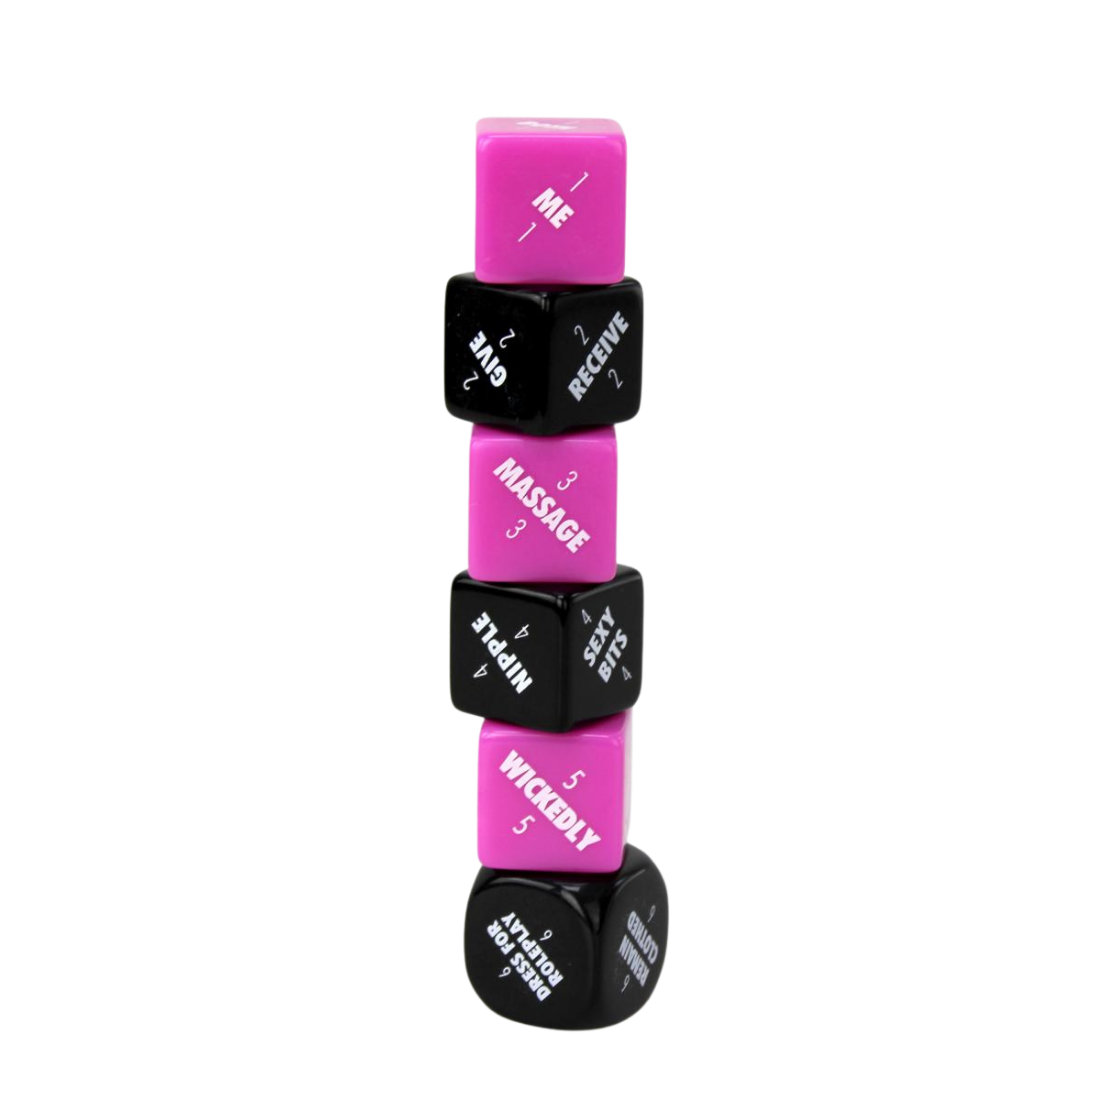 Adult Dobbelspel met 6 dobbelstenen, 3 zwarte en 3 roze. Ontworpen door Creative Conceptions en te koop bij Flavourez